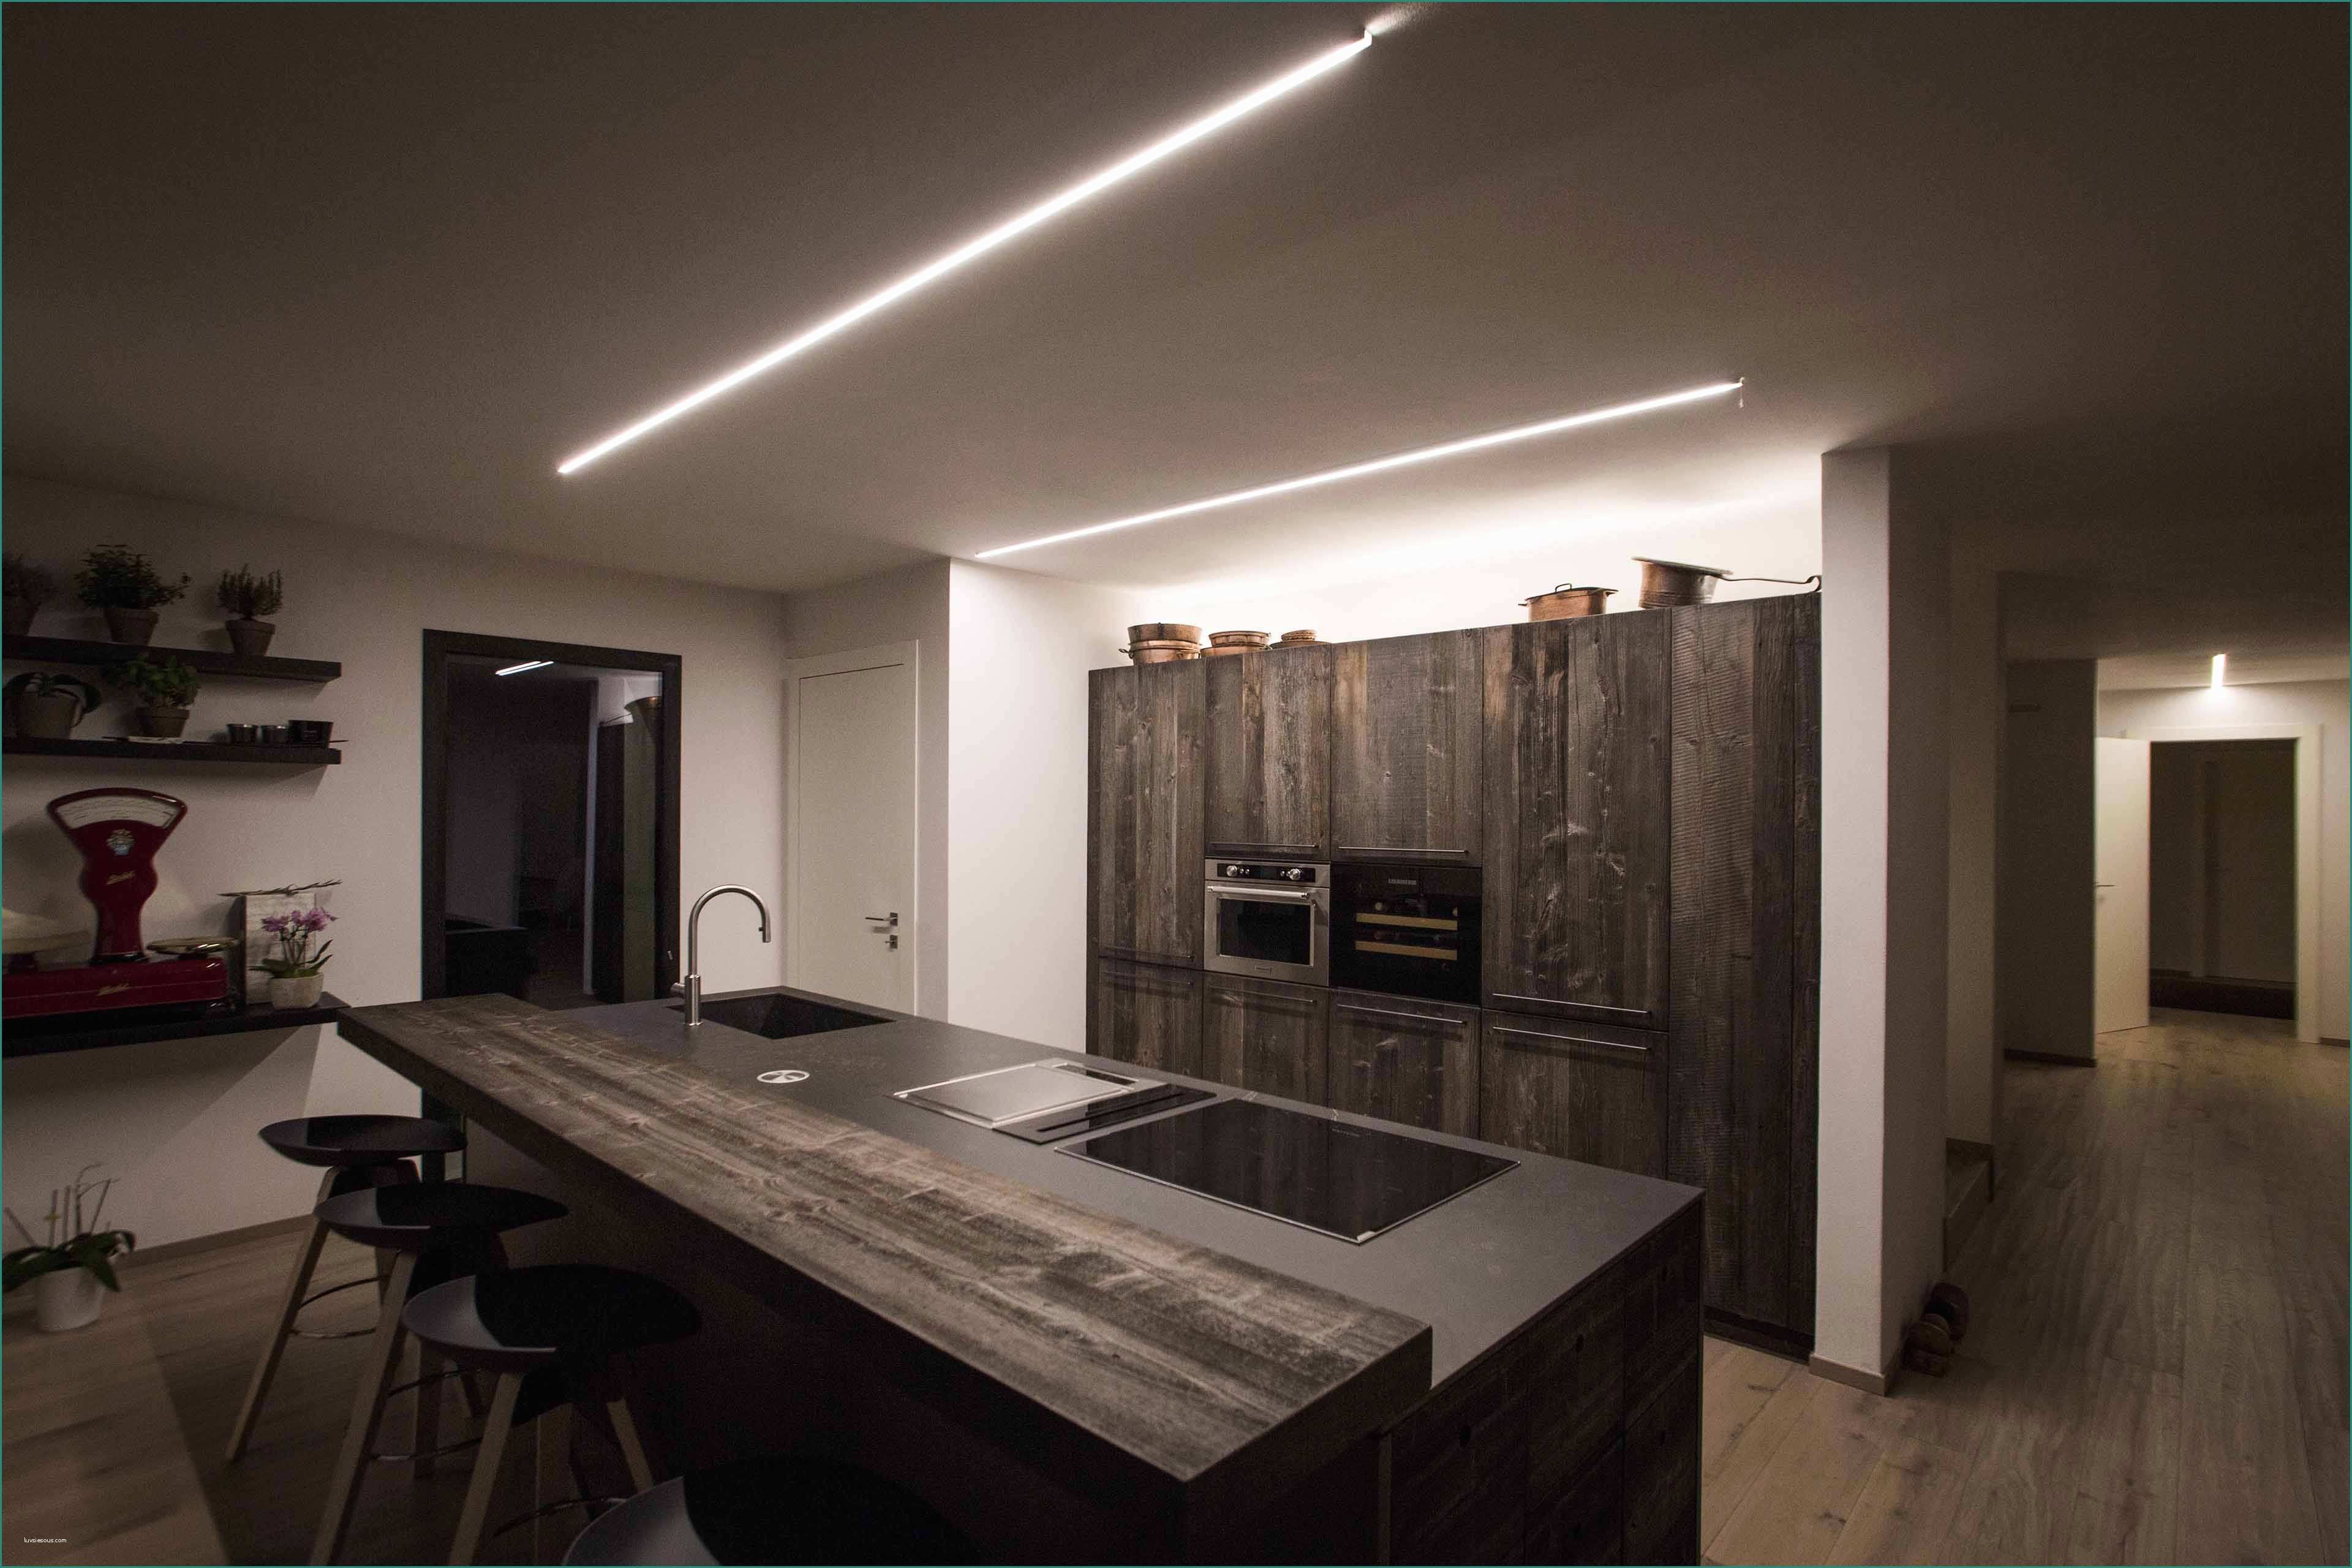 Illuminazione Casa Moderna E Luci Per Cucina Moderna Veletta In Cartongesso Con Faretti sopra